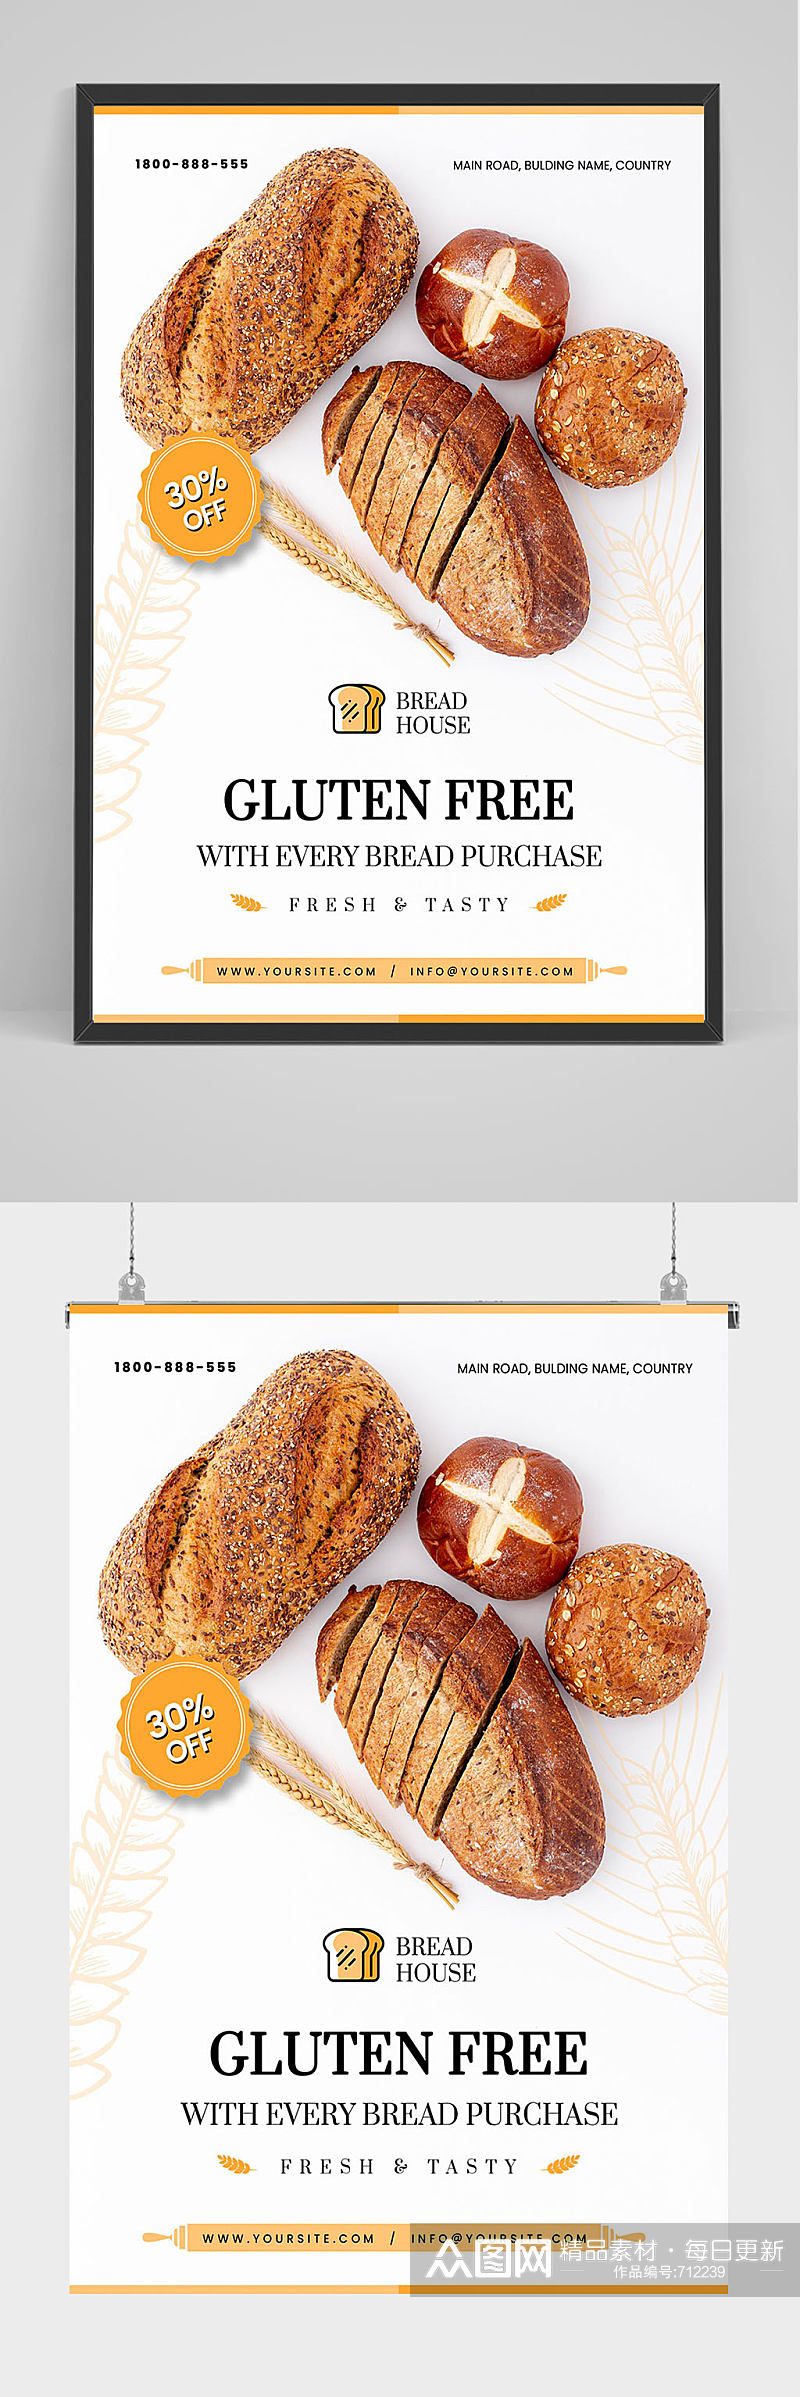 精品面包店面包促销海报设计素材